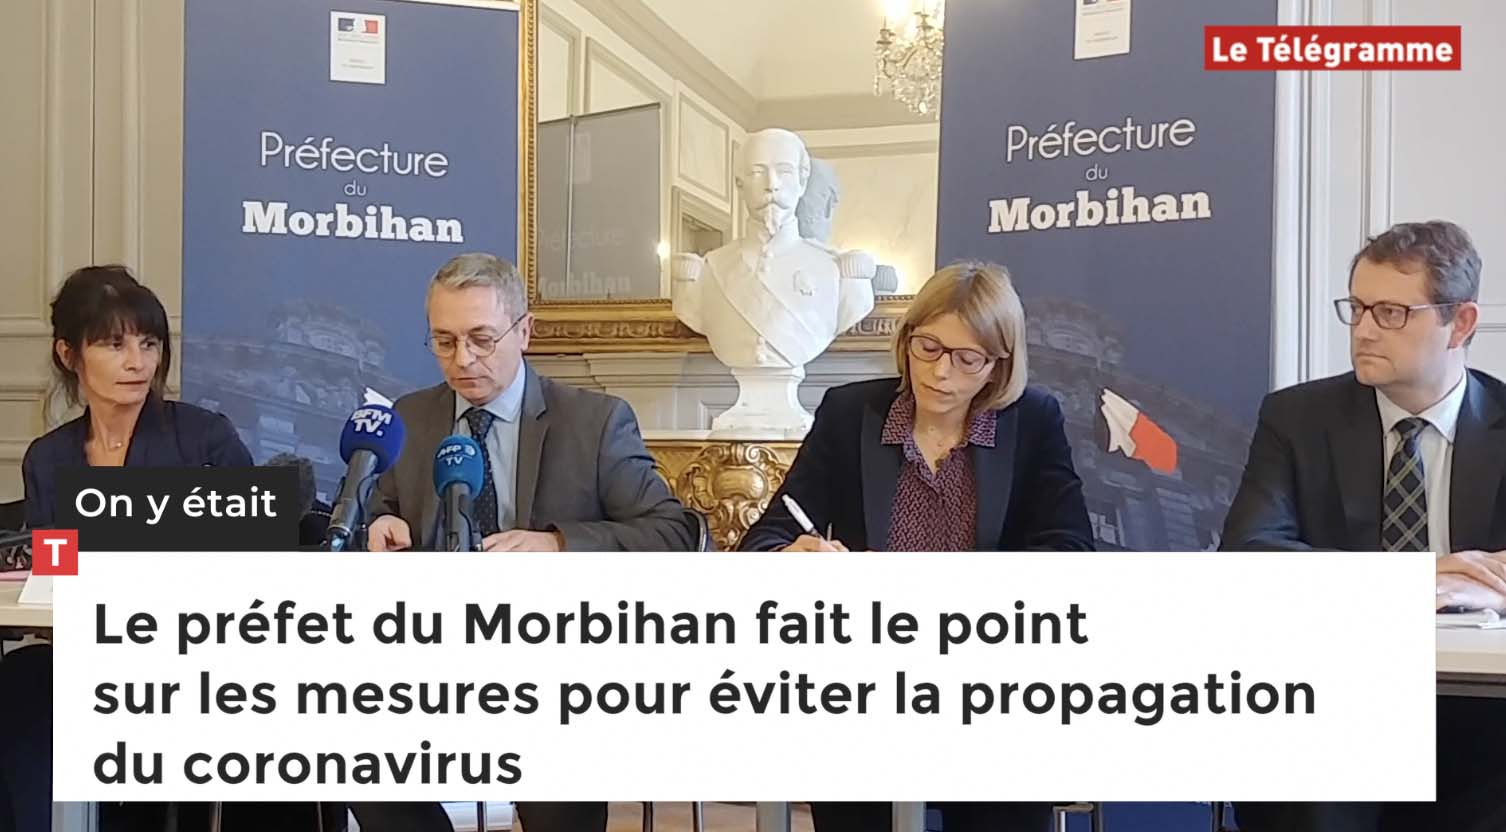 Le préfet du Morbihan fait le point sur les mesures pour éviter la propagation du coronavirus (Le Télégramme)